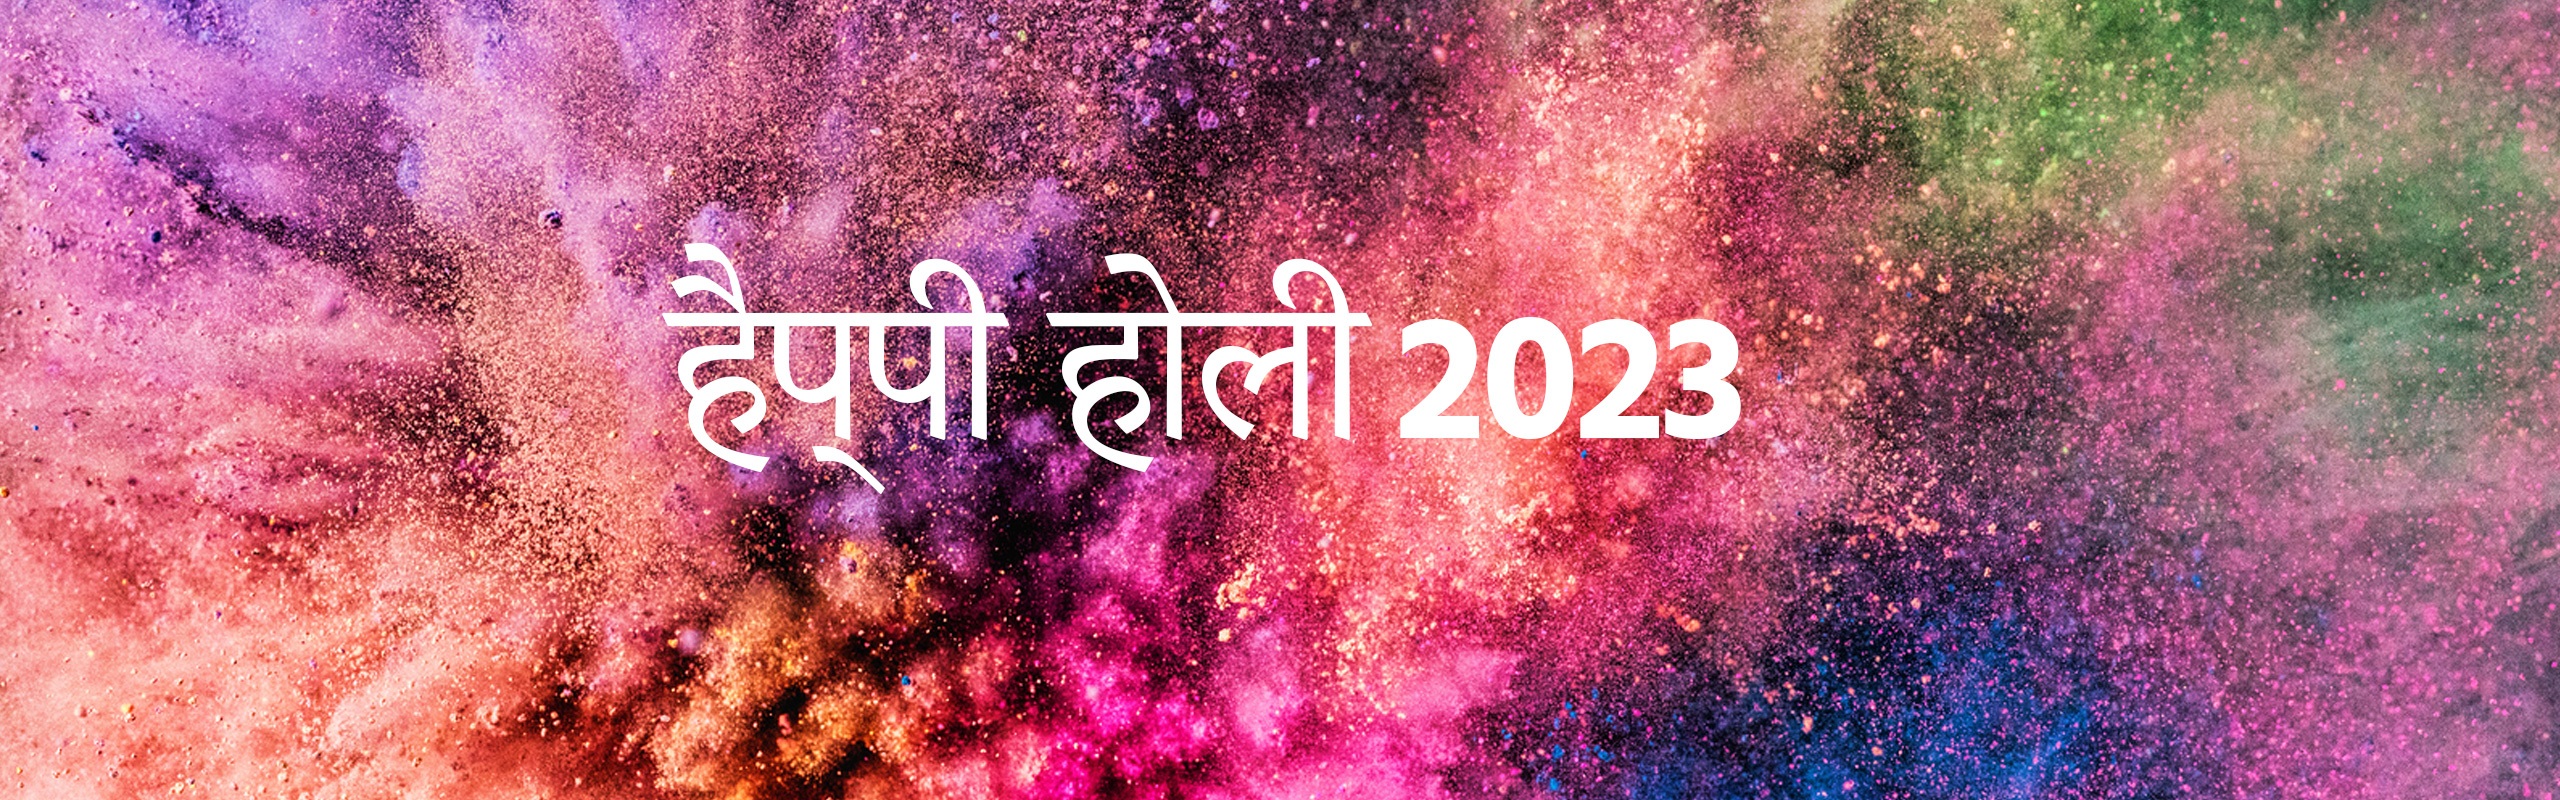 Happy Holi Wish 2023 in Hindi होली की शुभकामनाएं हिंदी में